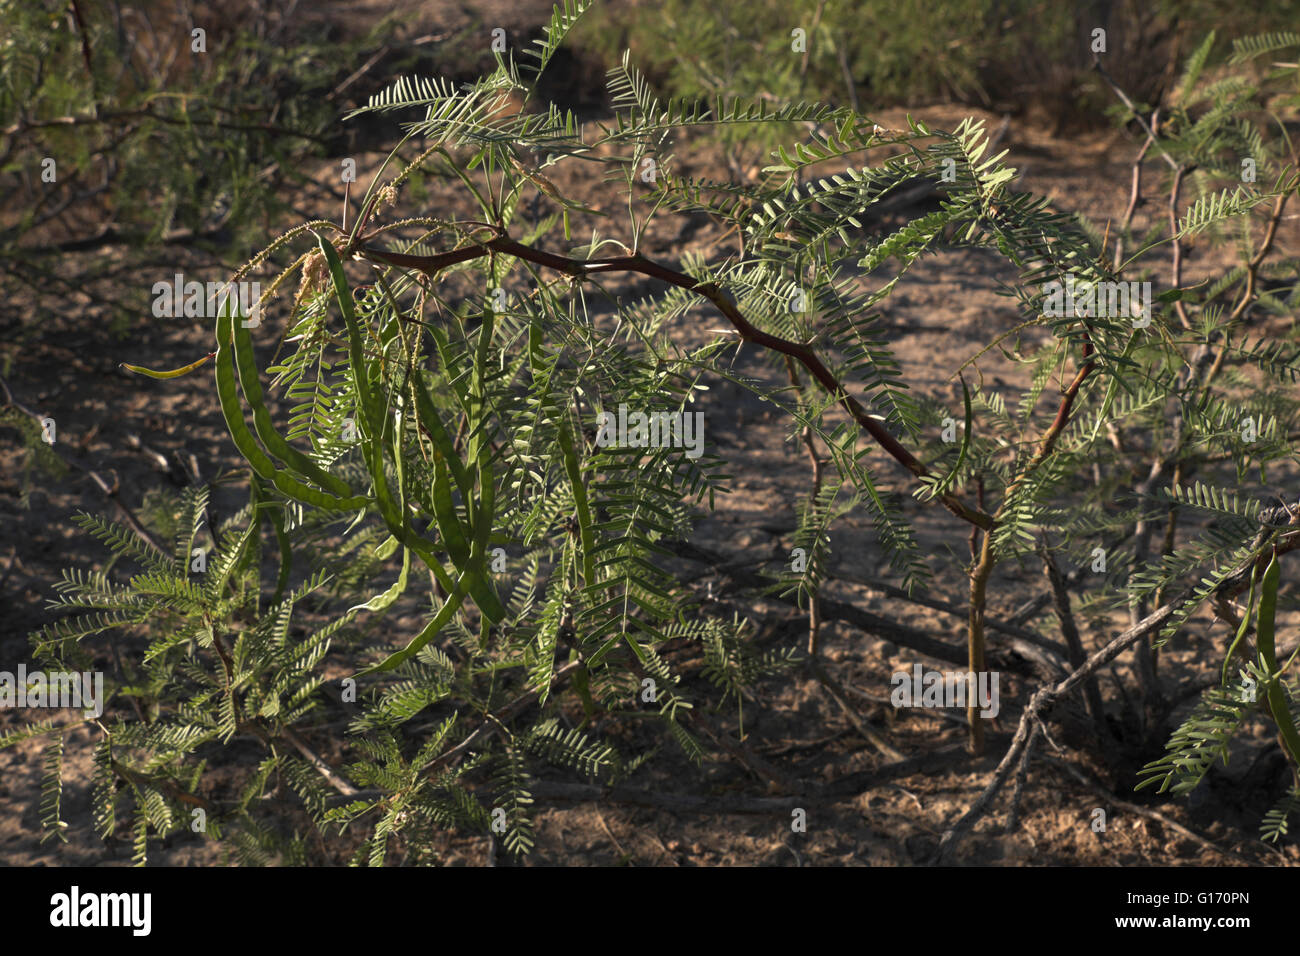 Mesquite fagioli che cresce su un molto giovane albero nel deserto vicino a studiare Butte, Texas, appena fuori dal parco nazionale di Big Bend. Foto Stock